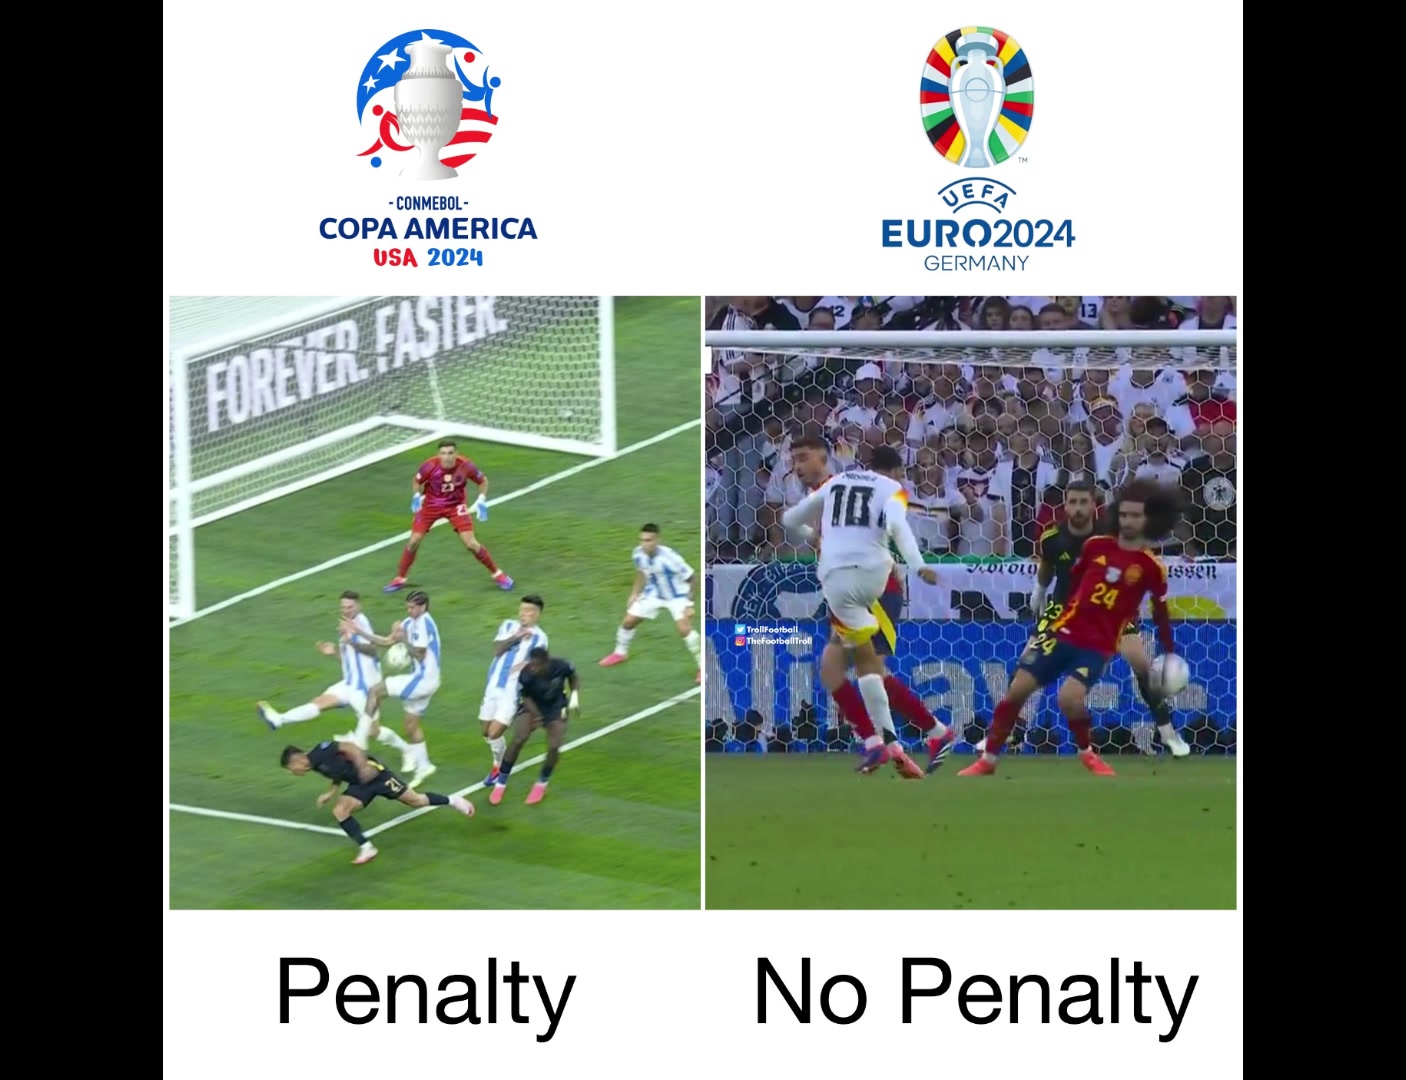 国外博主对比欧洲杯和美洲杯的判罚区别：德保罗手球给点和库库手球不给点